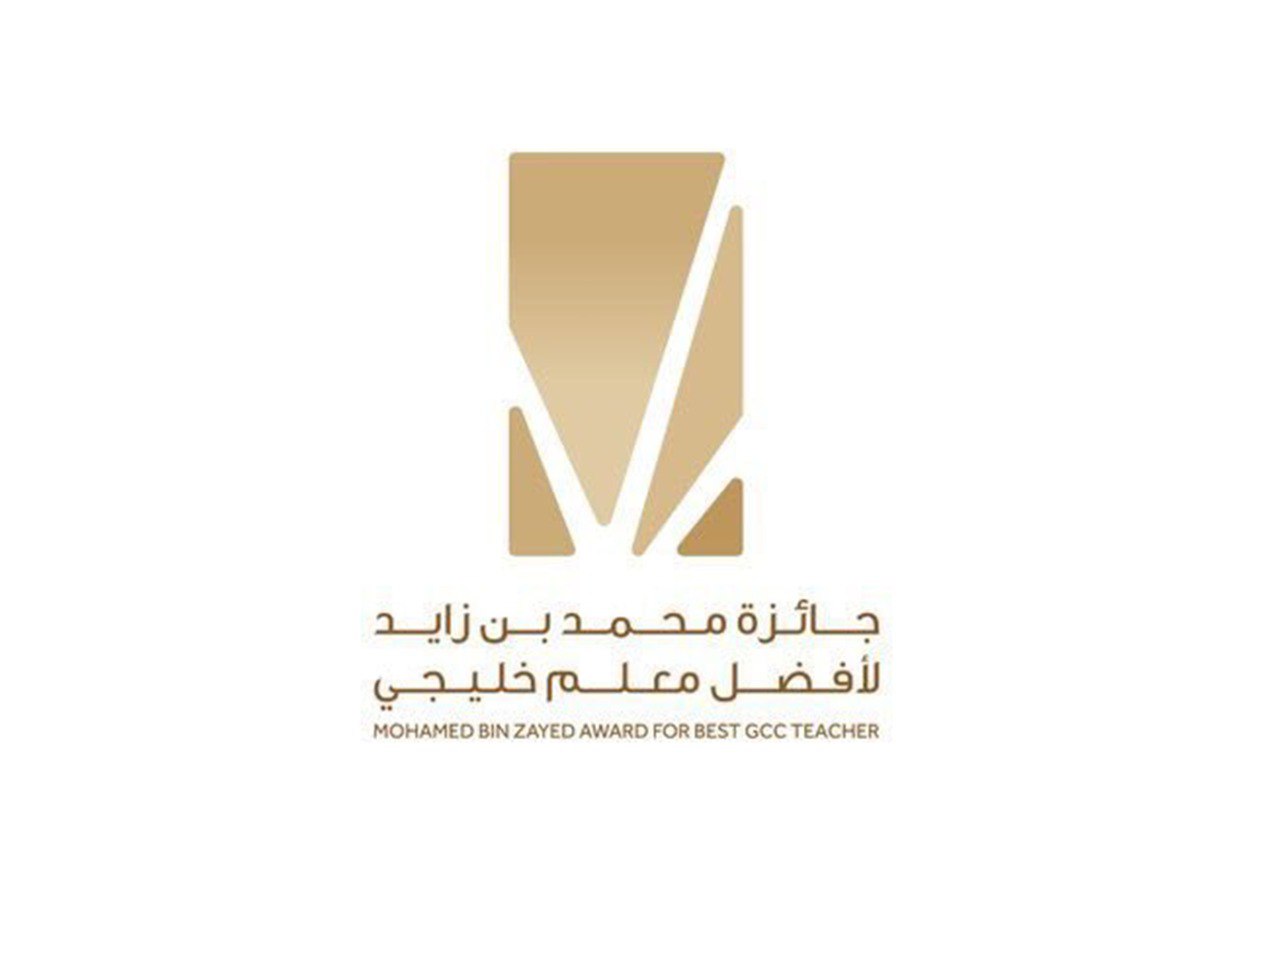 Winners Of Mohamed Bin Zayed Award For Best GCC Teacher Announced